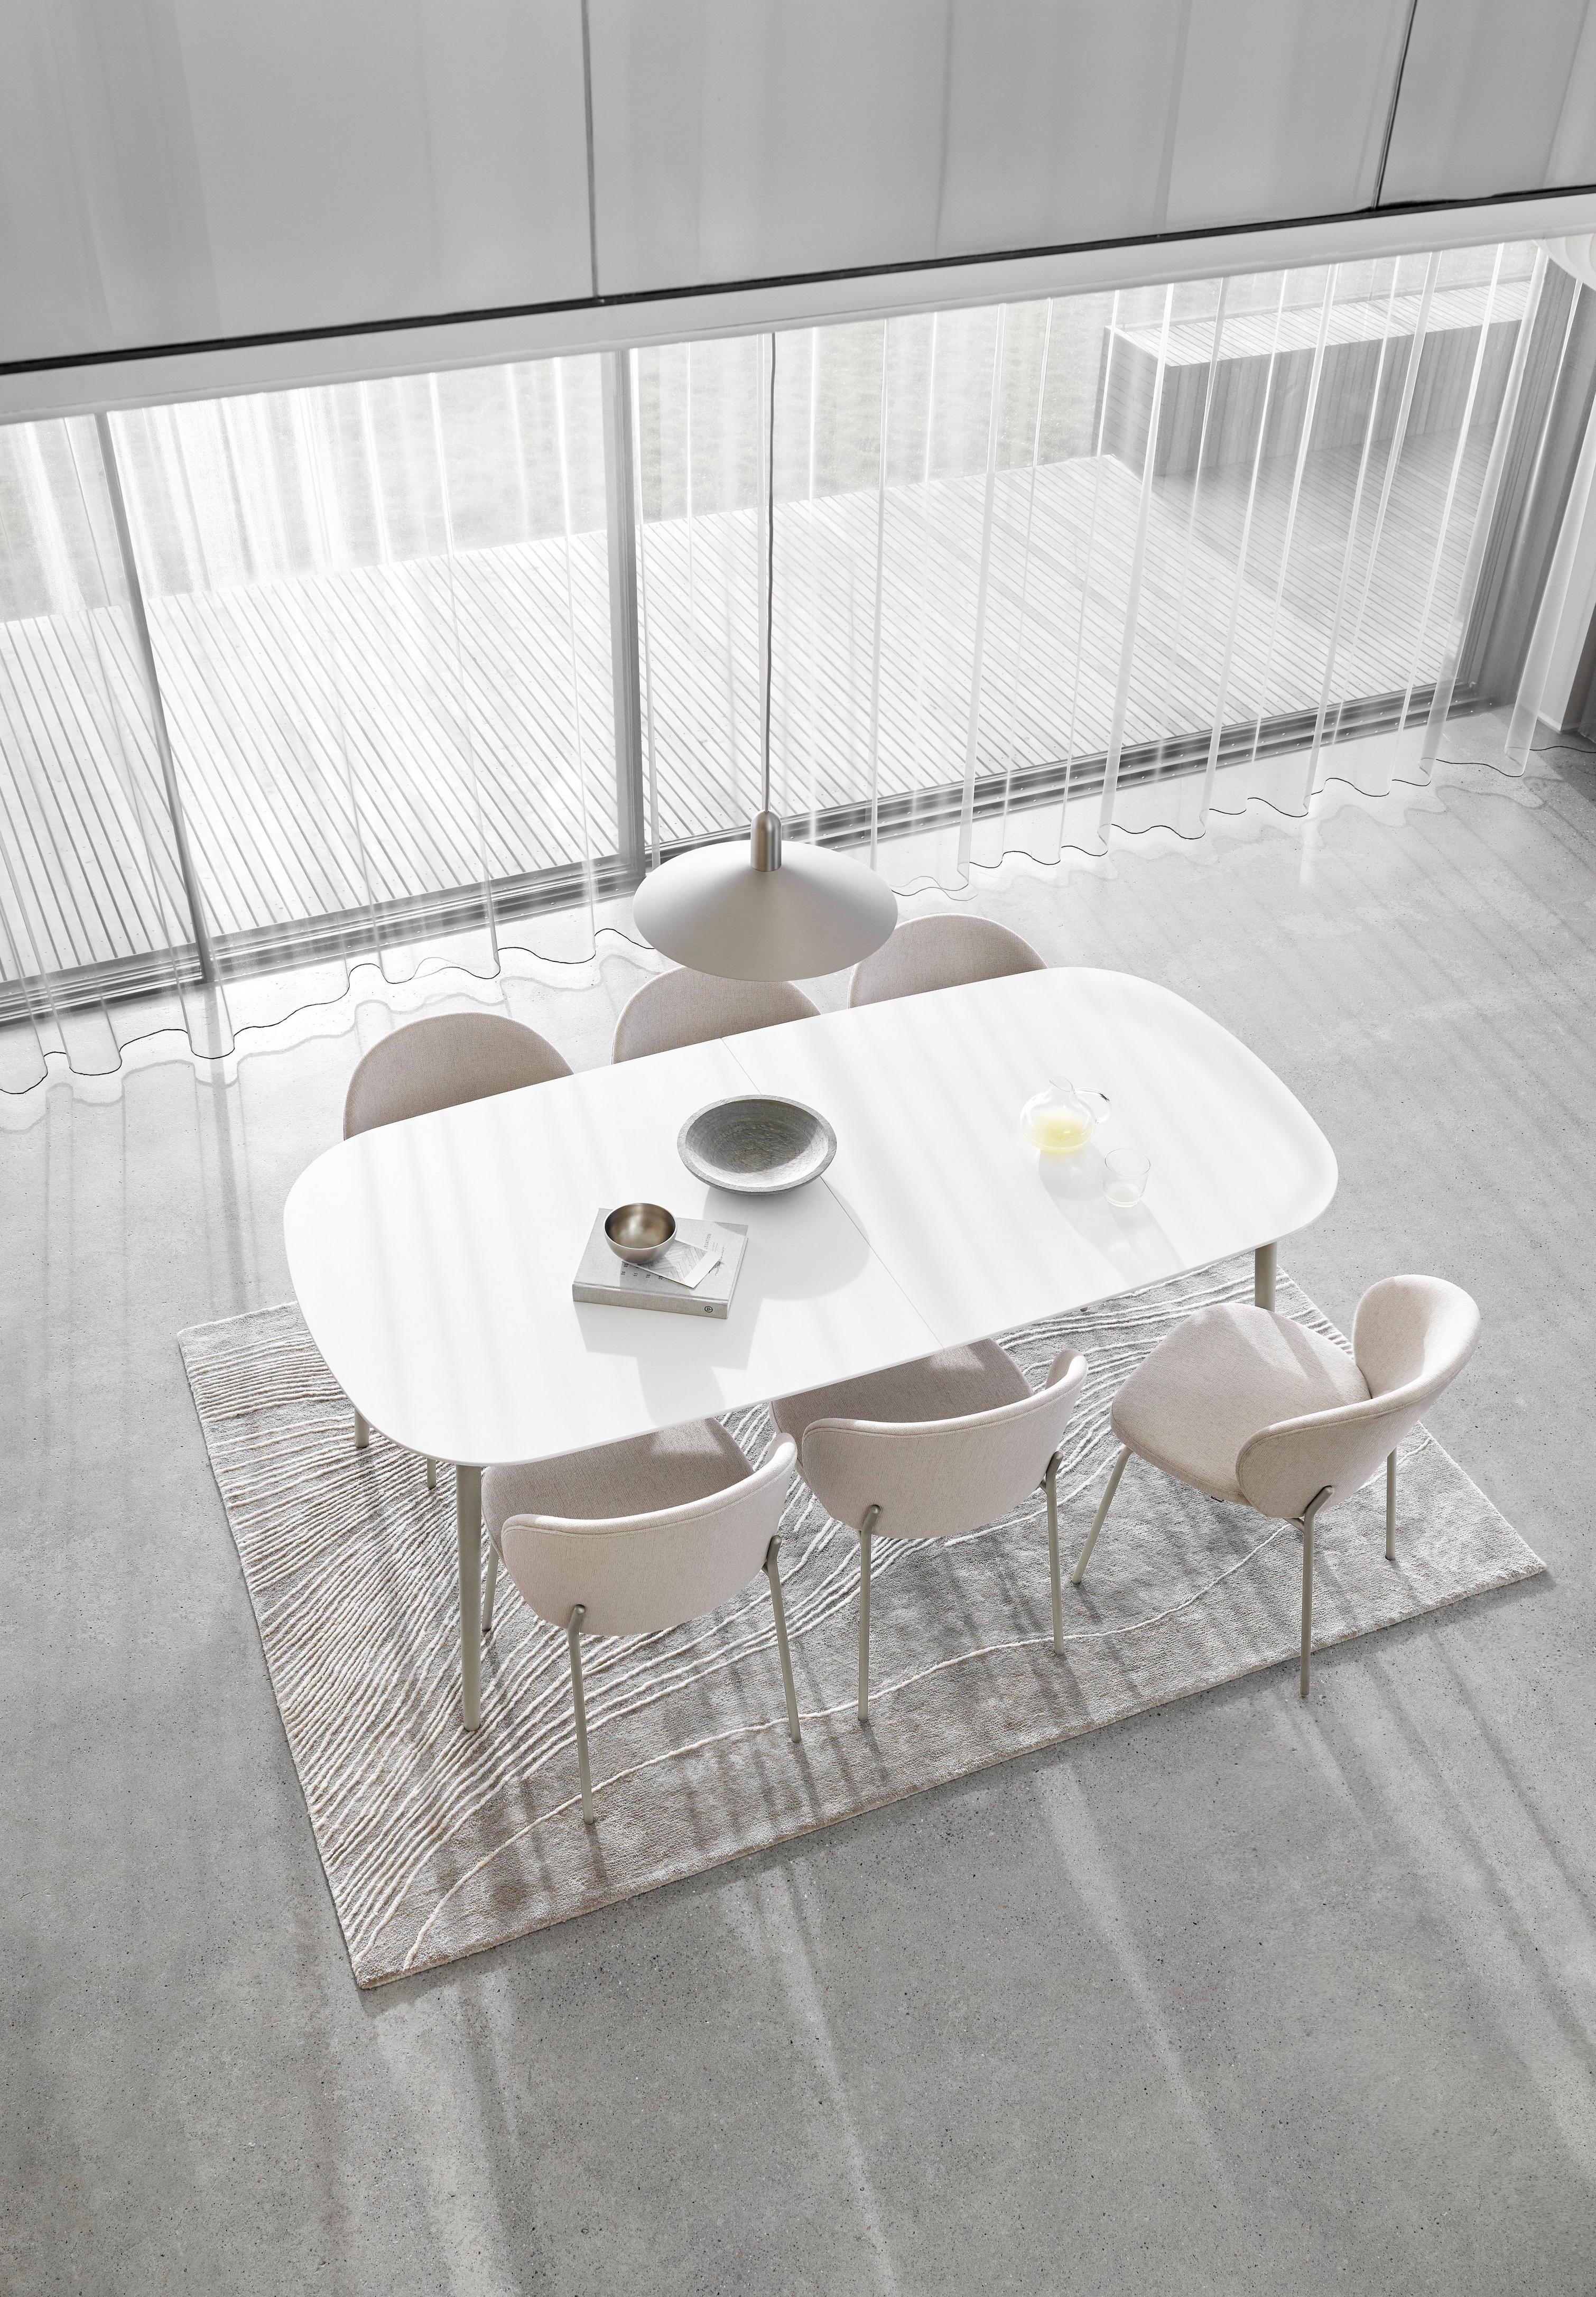 Espace repas minimaliste avec une table ovale blanche, des chaises, des rideaux transparents et un tapis texturé.